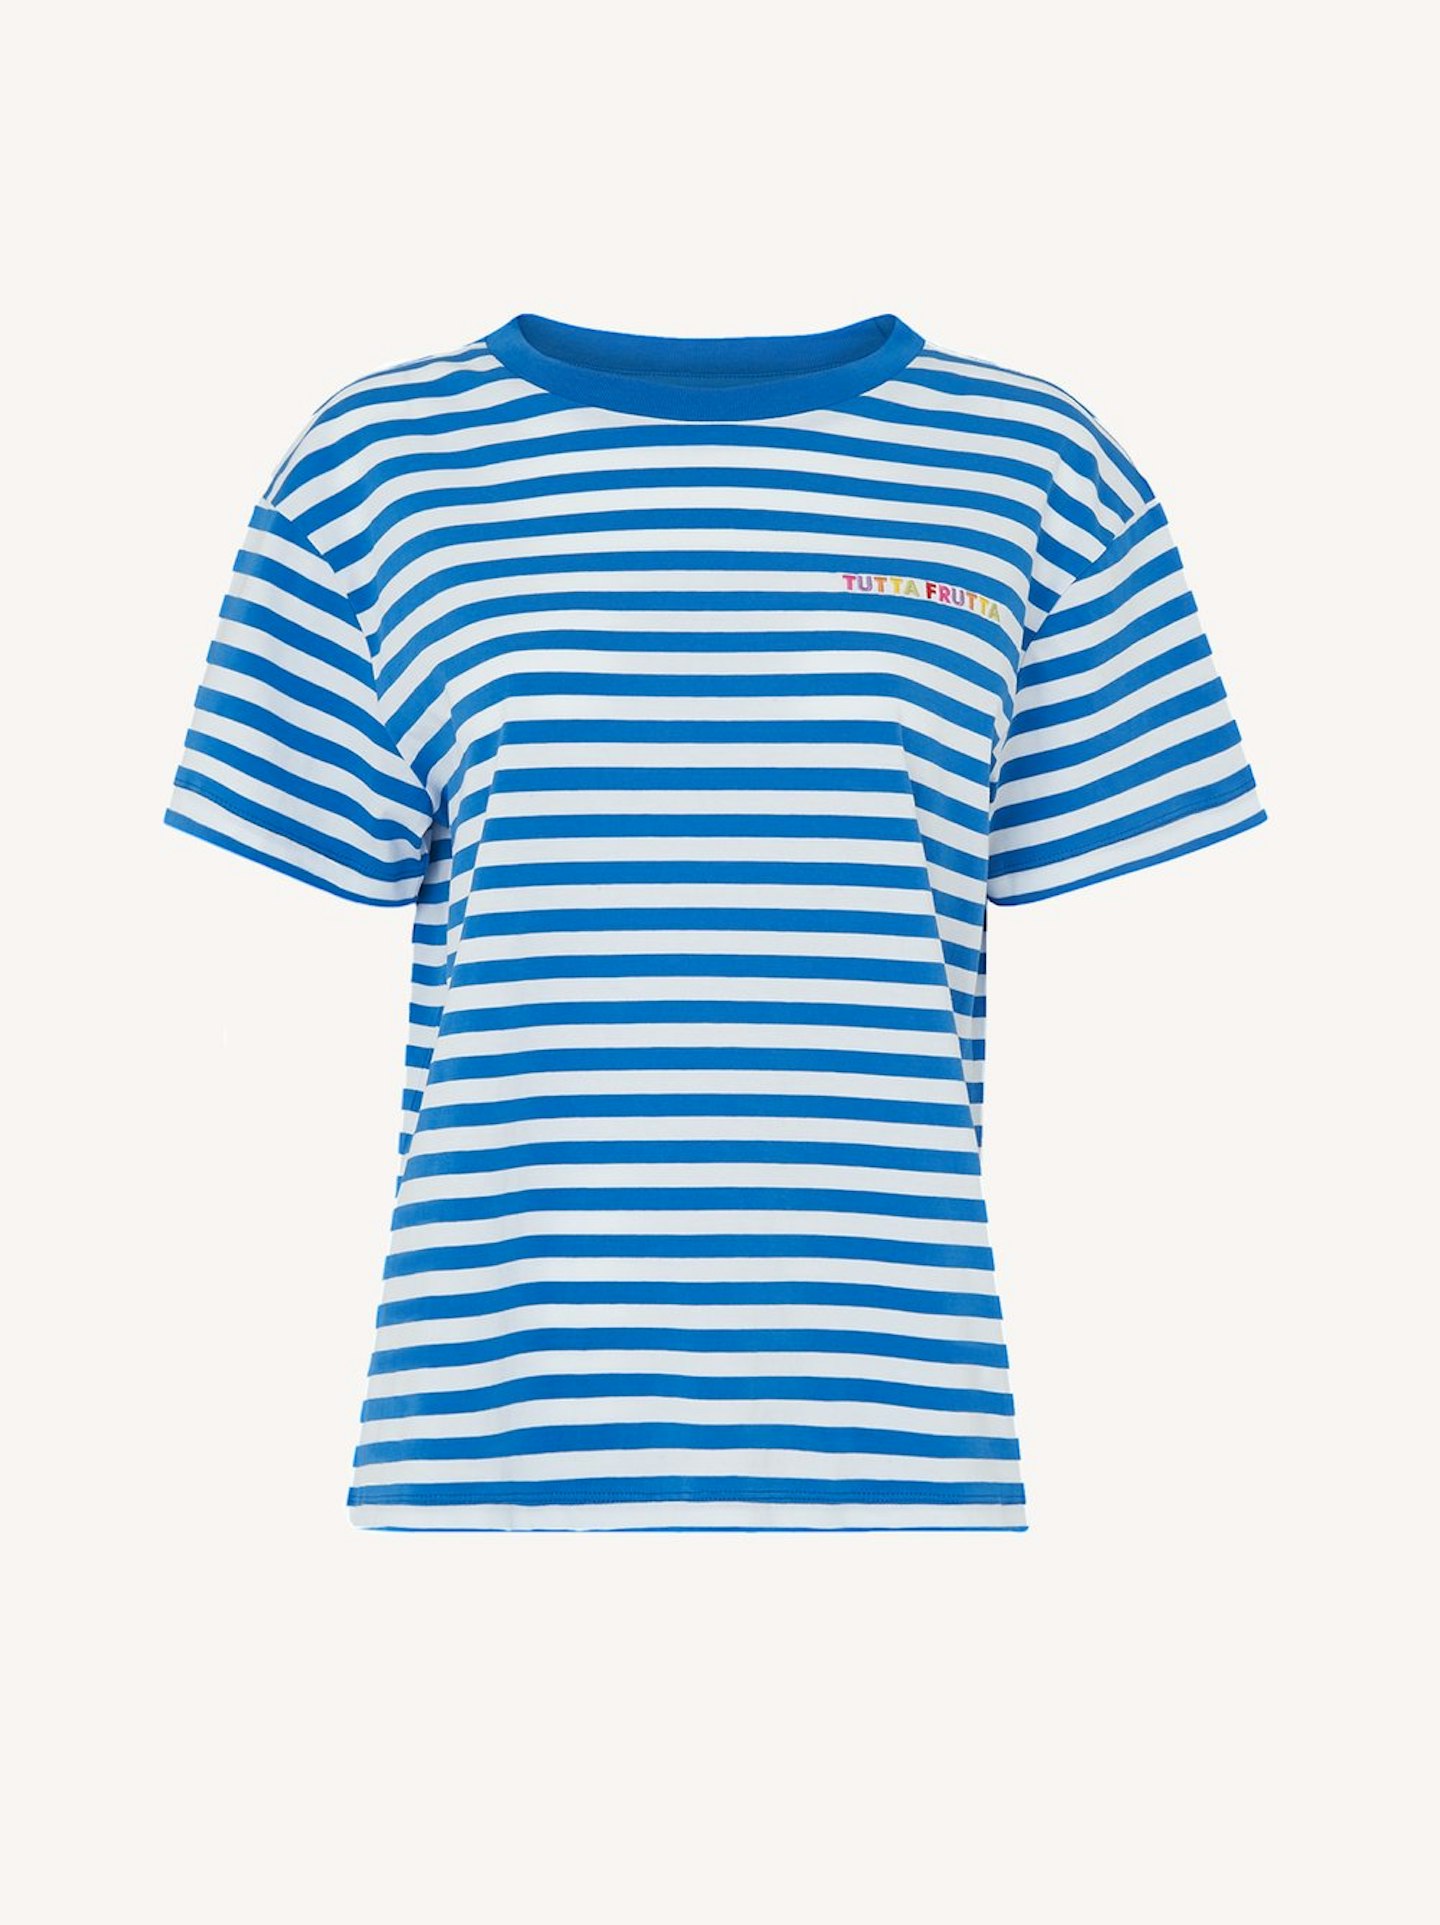 Tutta Frutta Striped T-Shirt, £45